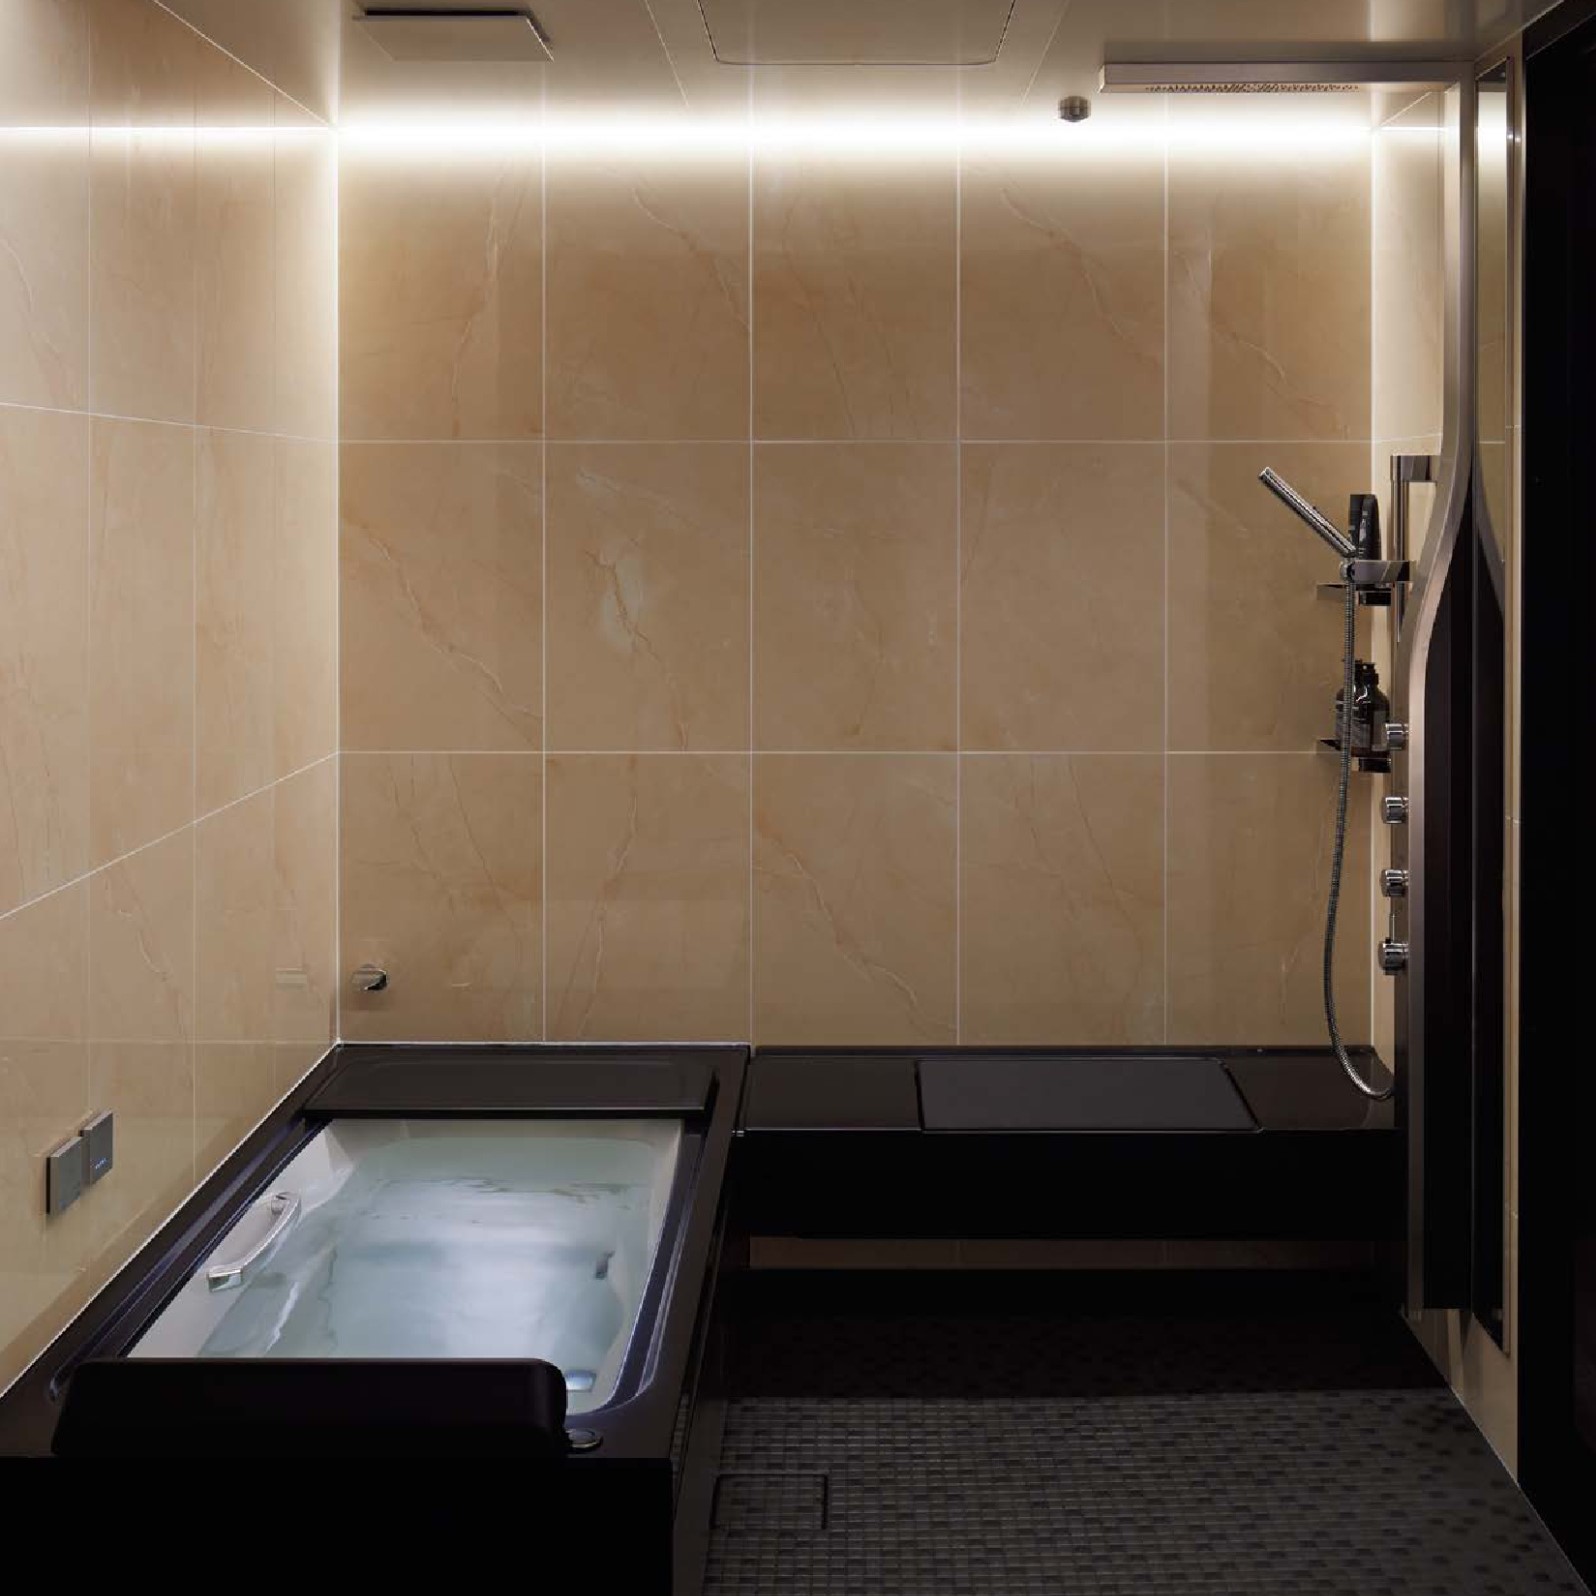 LIXILのハイグレードのユニットバス、スパージュです。シャワーデザインや床や壁の素材が最高級のオプション。浴槽には肩湯・肩ほぐし湯・腰ほぐし湯のアクアフィールが搭載されています。入浴をリラクゼーションにするハイグレードバスルームのスパージュ。お見積り・ご相談は名古屋リフォームへお任せください。|[公式]名古屋リフォーム|名古屋リフォームは名古屋市・日進市・春日井市のおしゃれなリフォーム＆リノベーション専門会社です